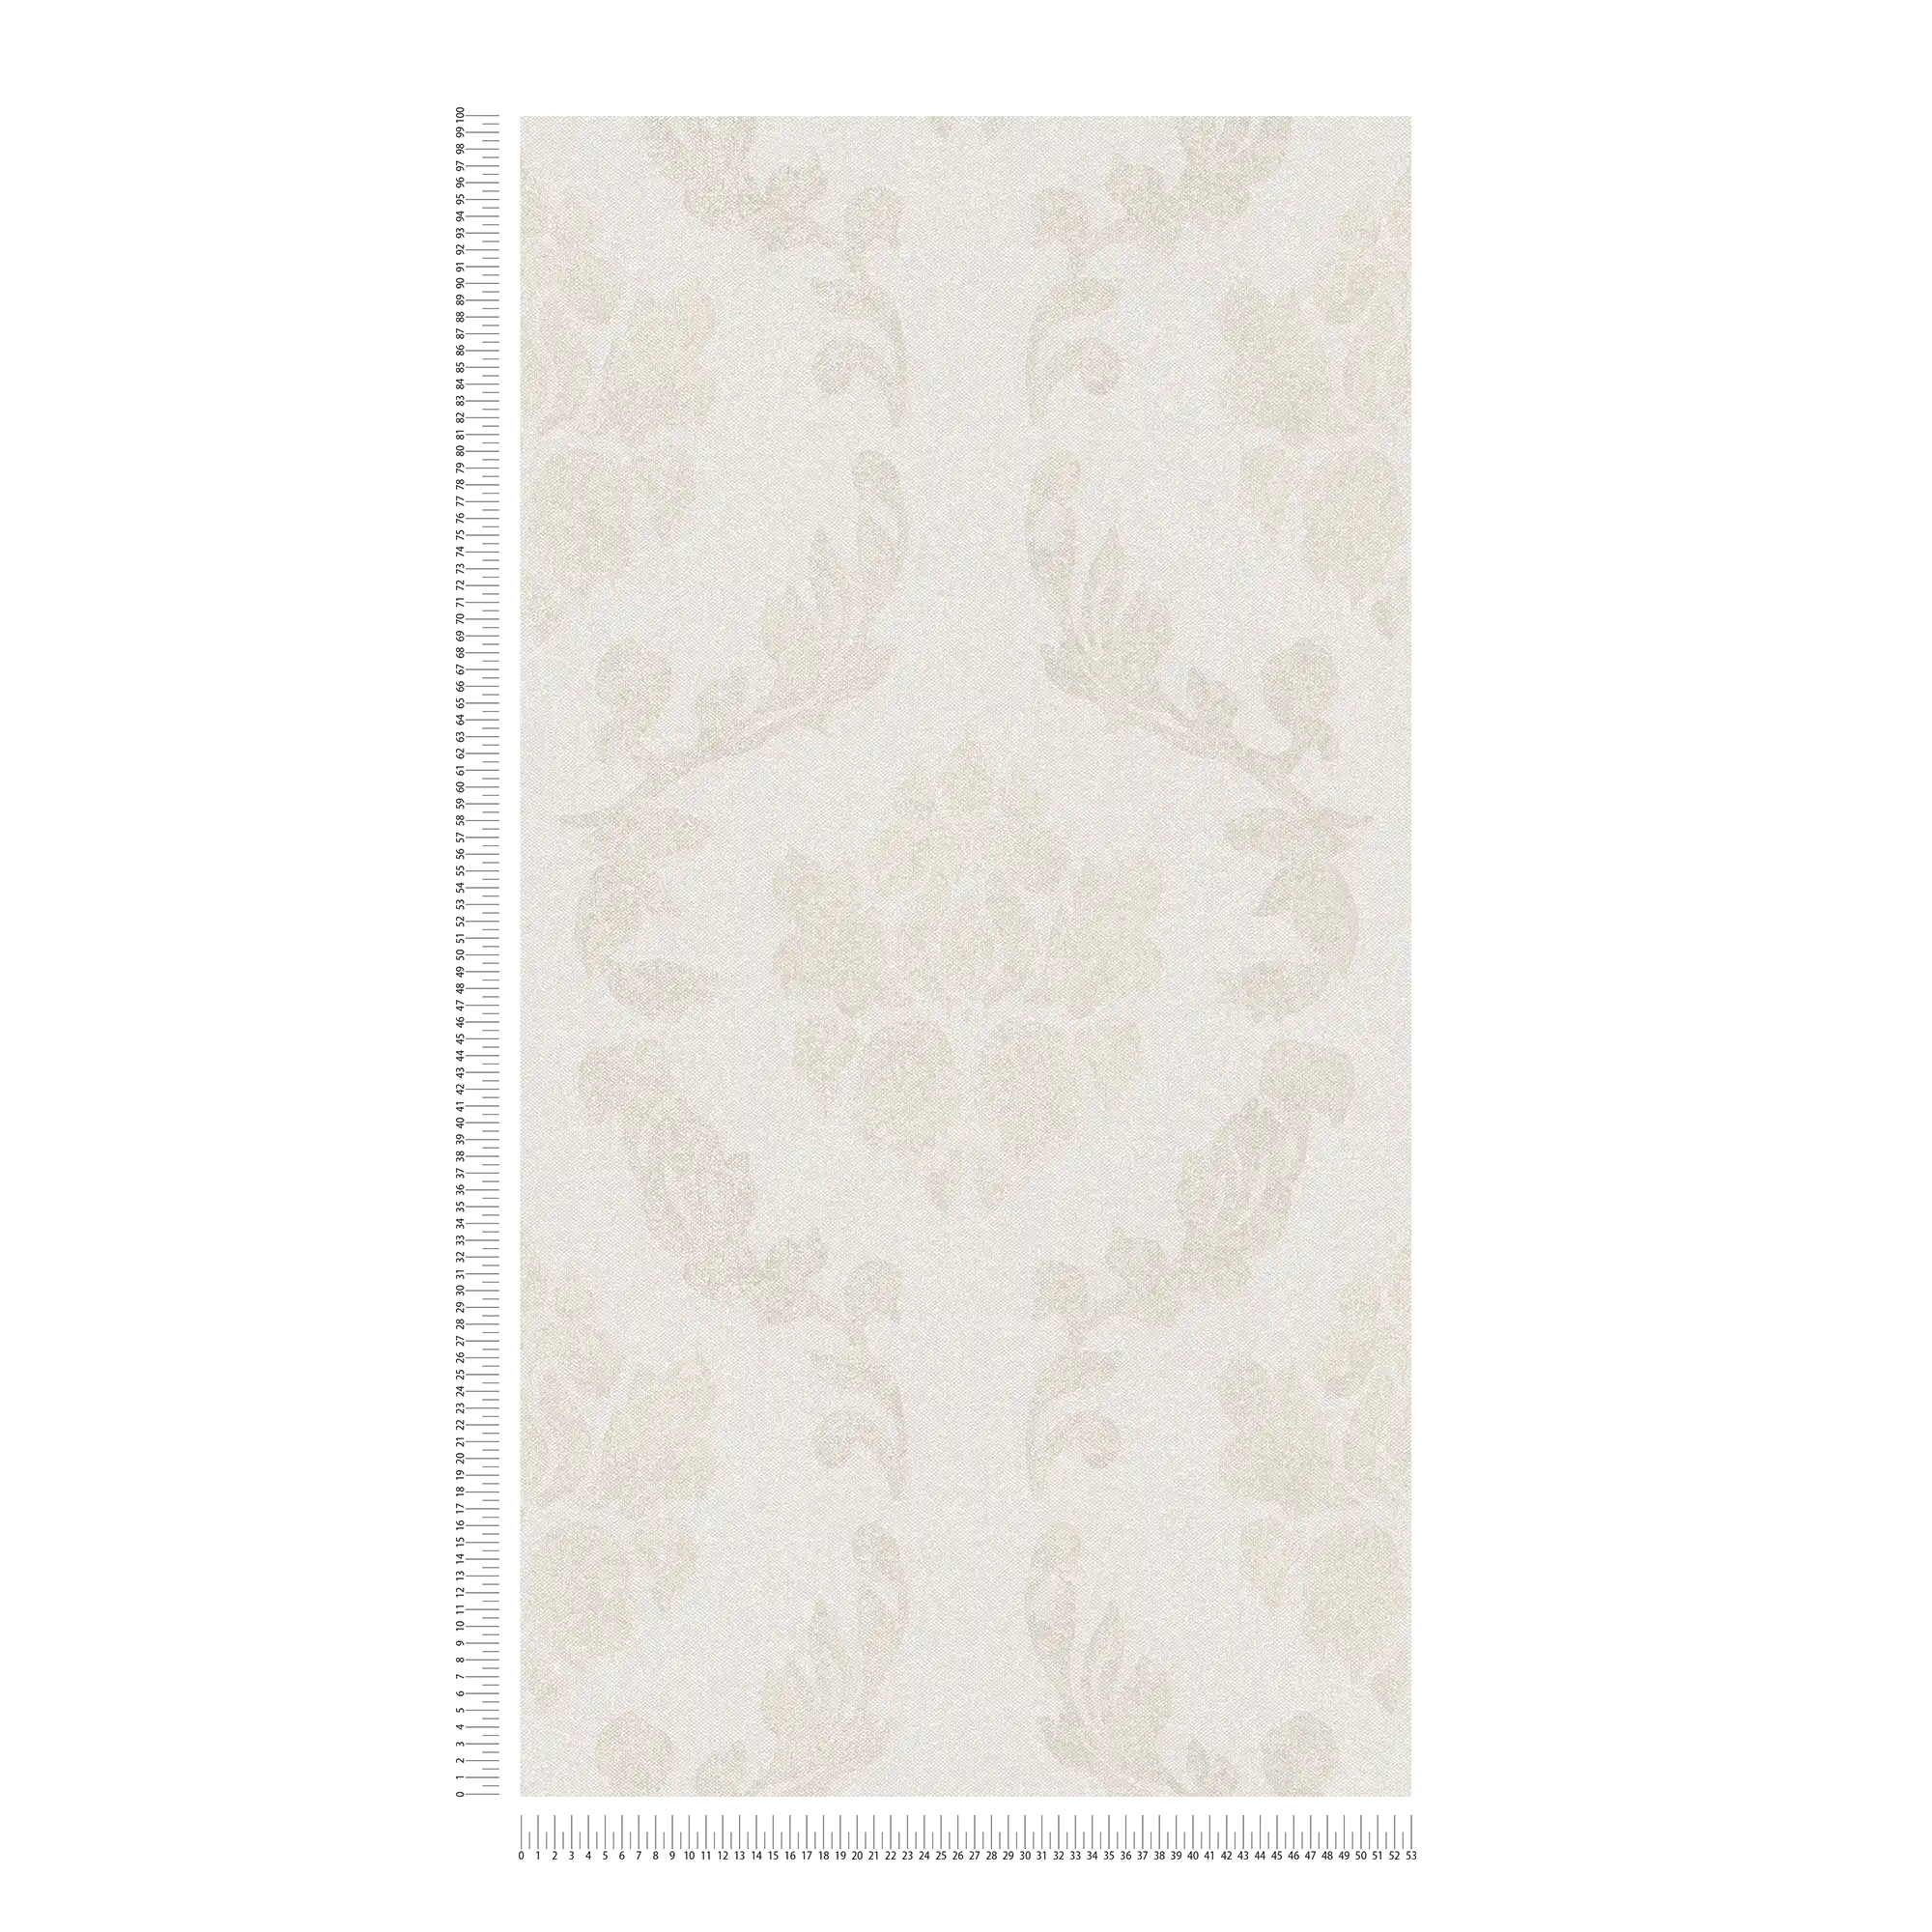             Carta da parati con motivi ornamentali in look lino - crema, beige
        